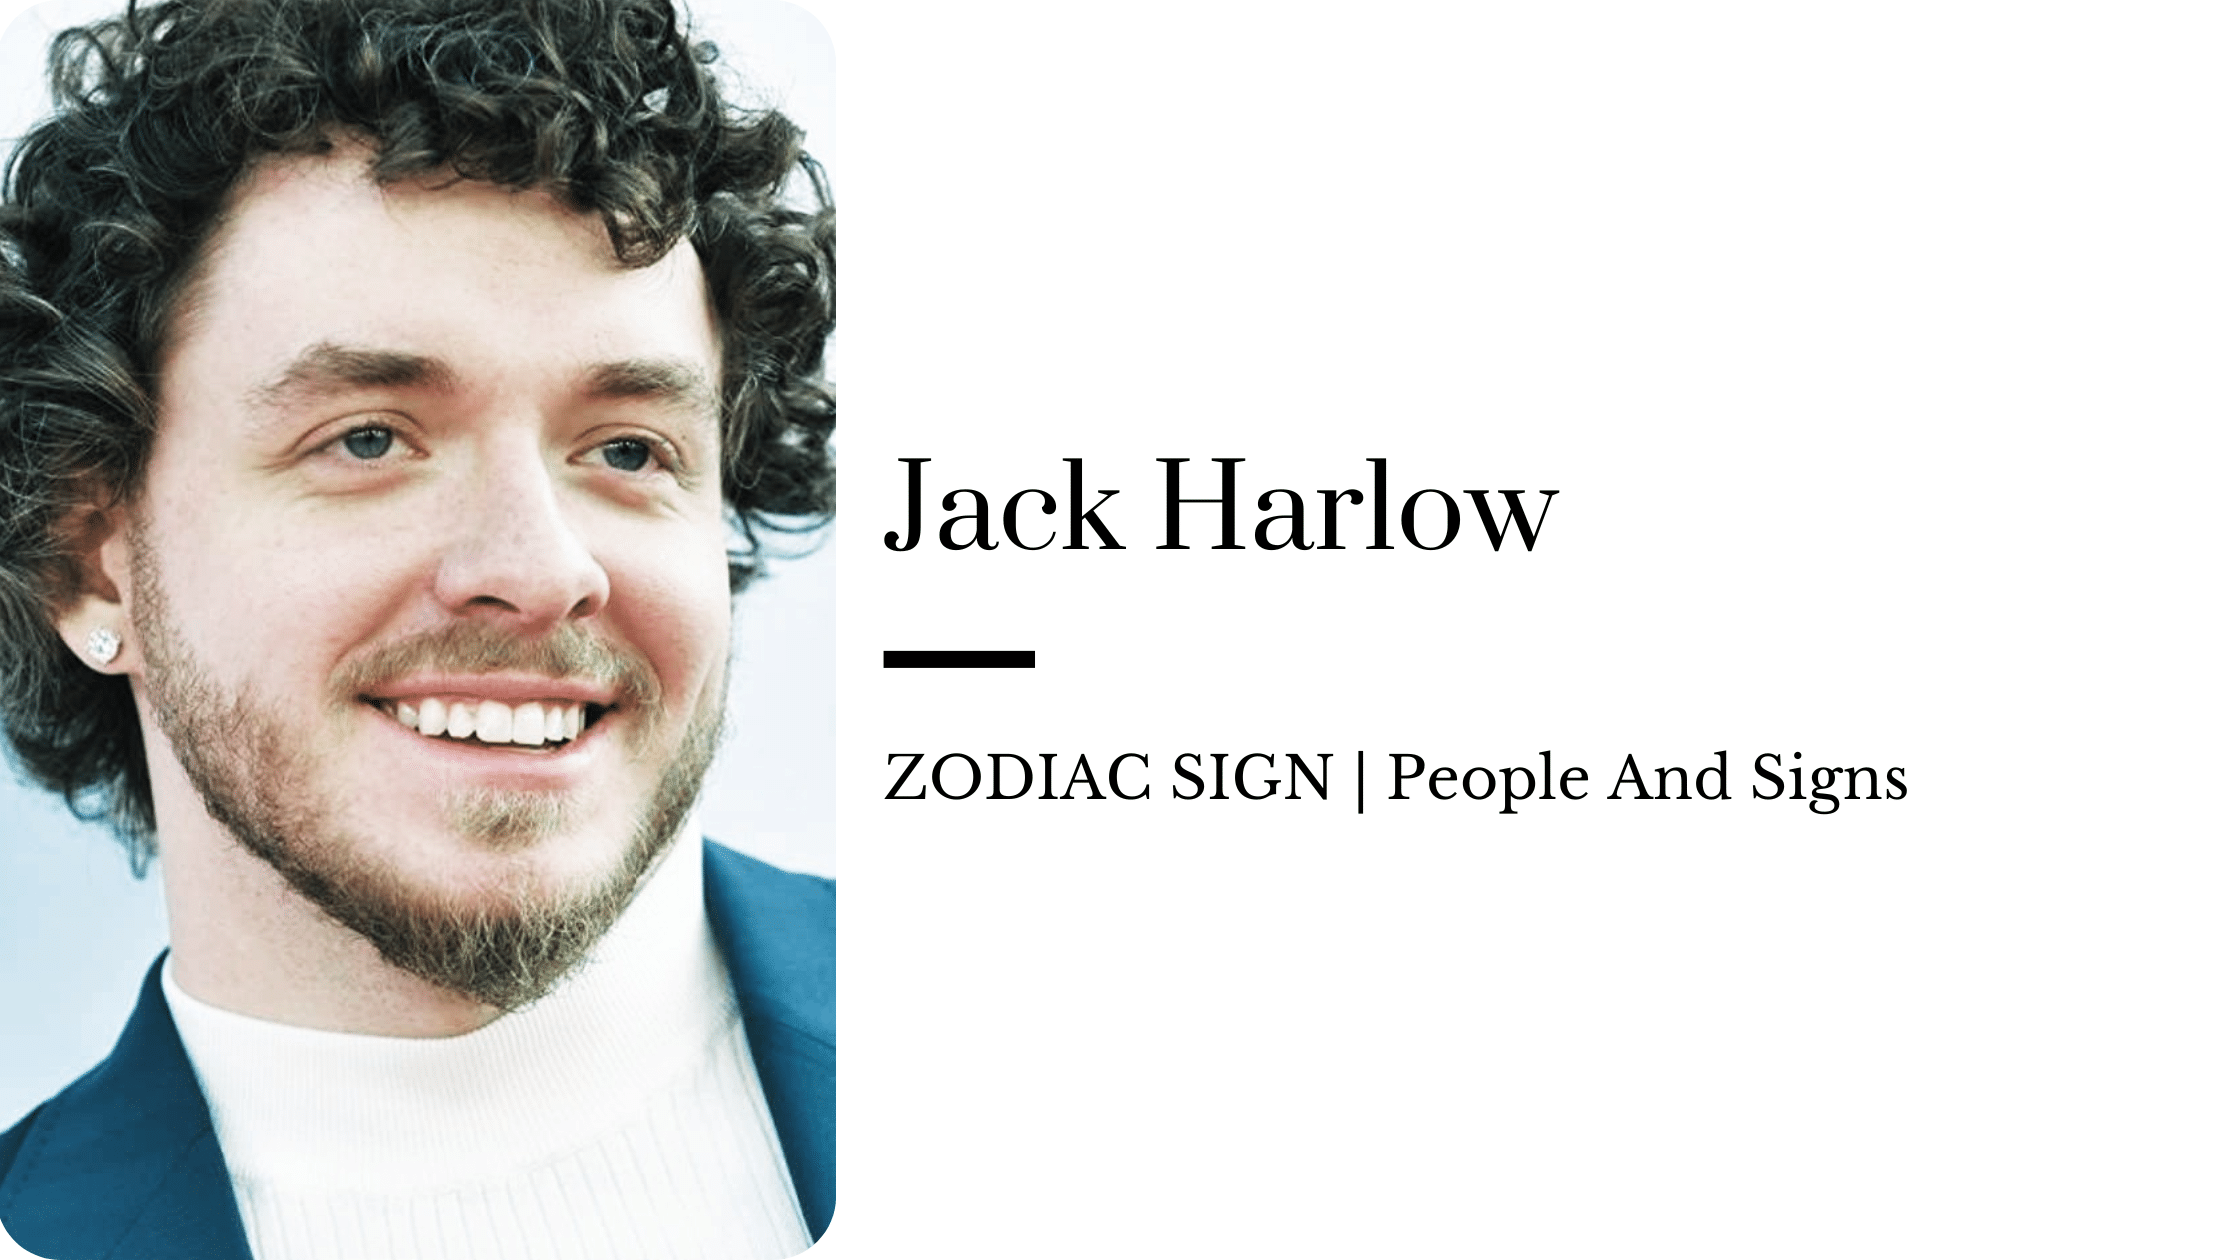 Jack Harlow zodiac